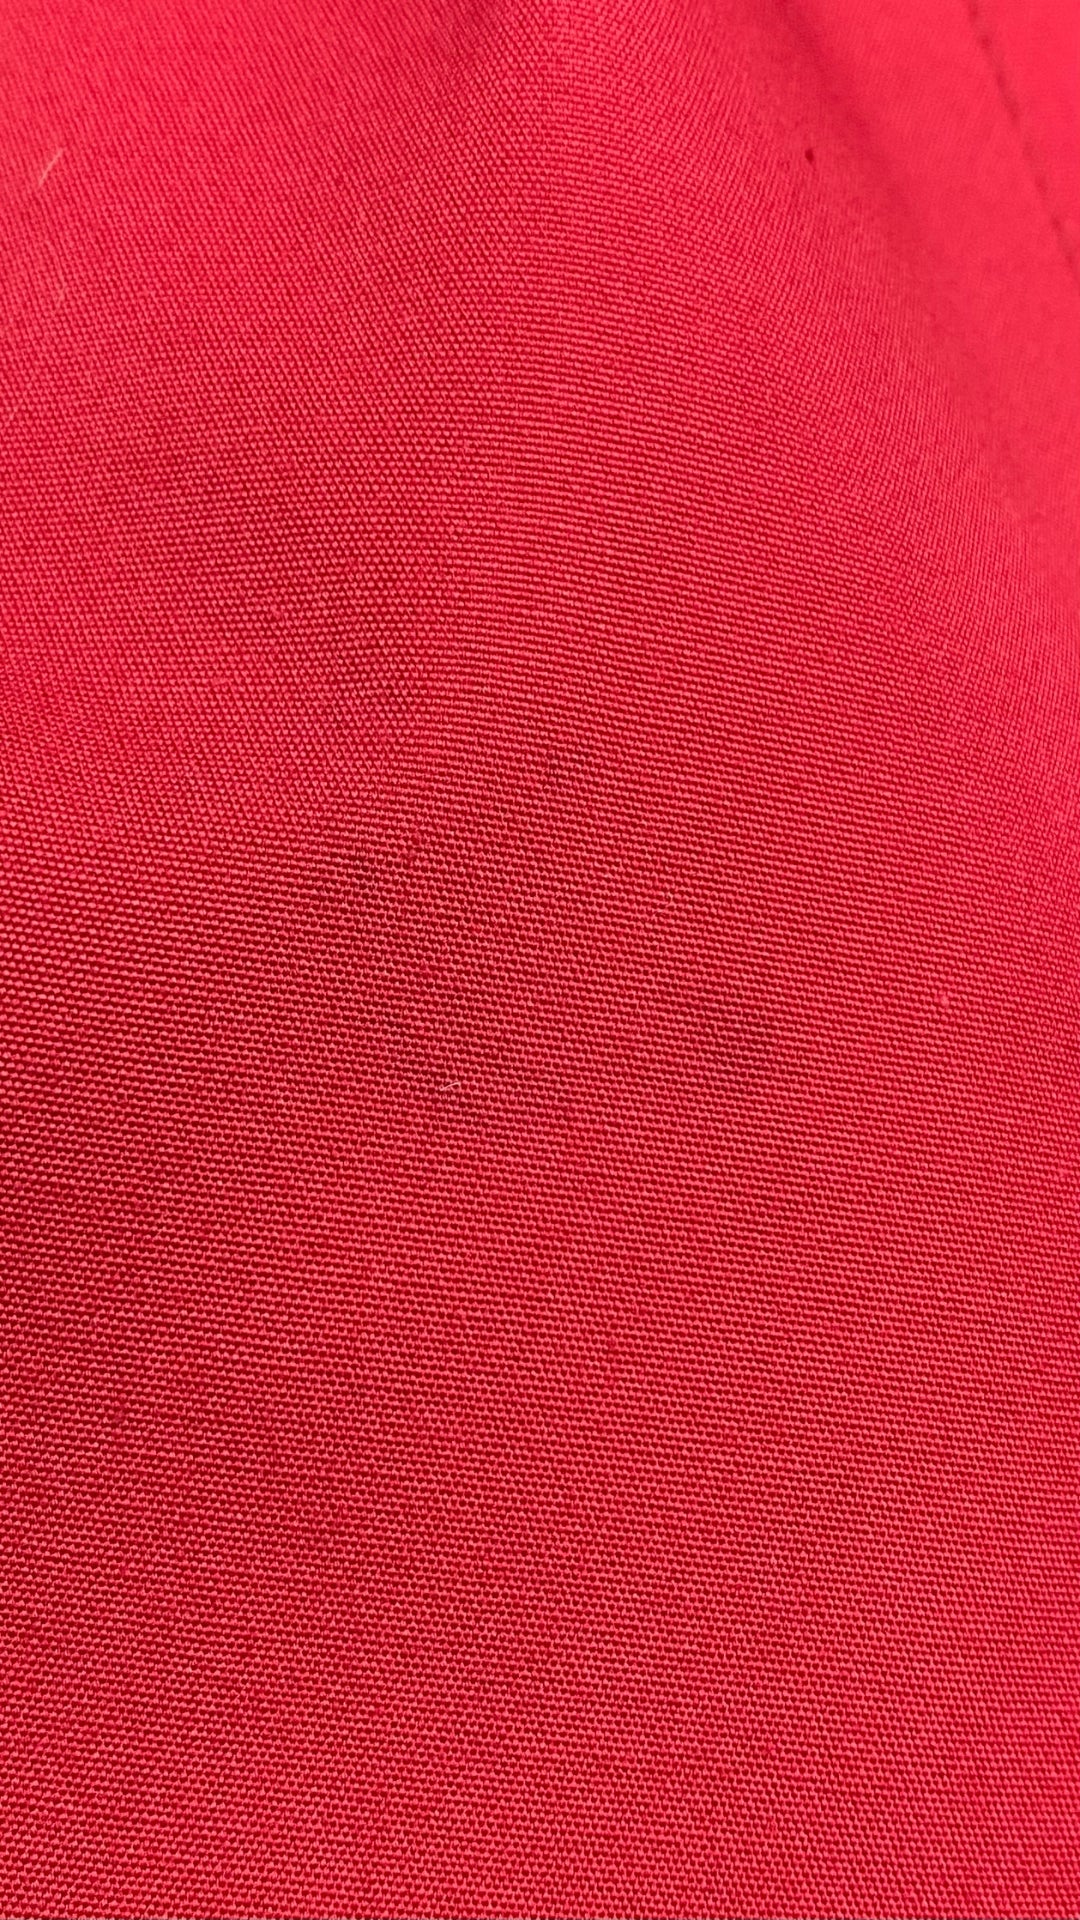 Manteau long vintage style trench rouge, taille small/medium. Vue de petite tache.